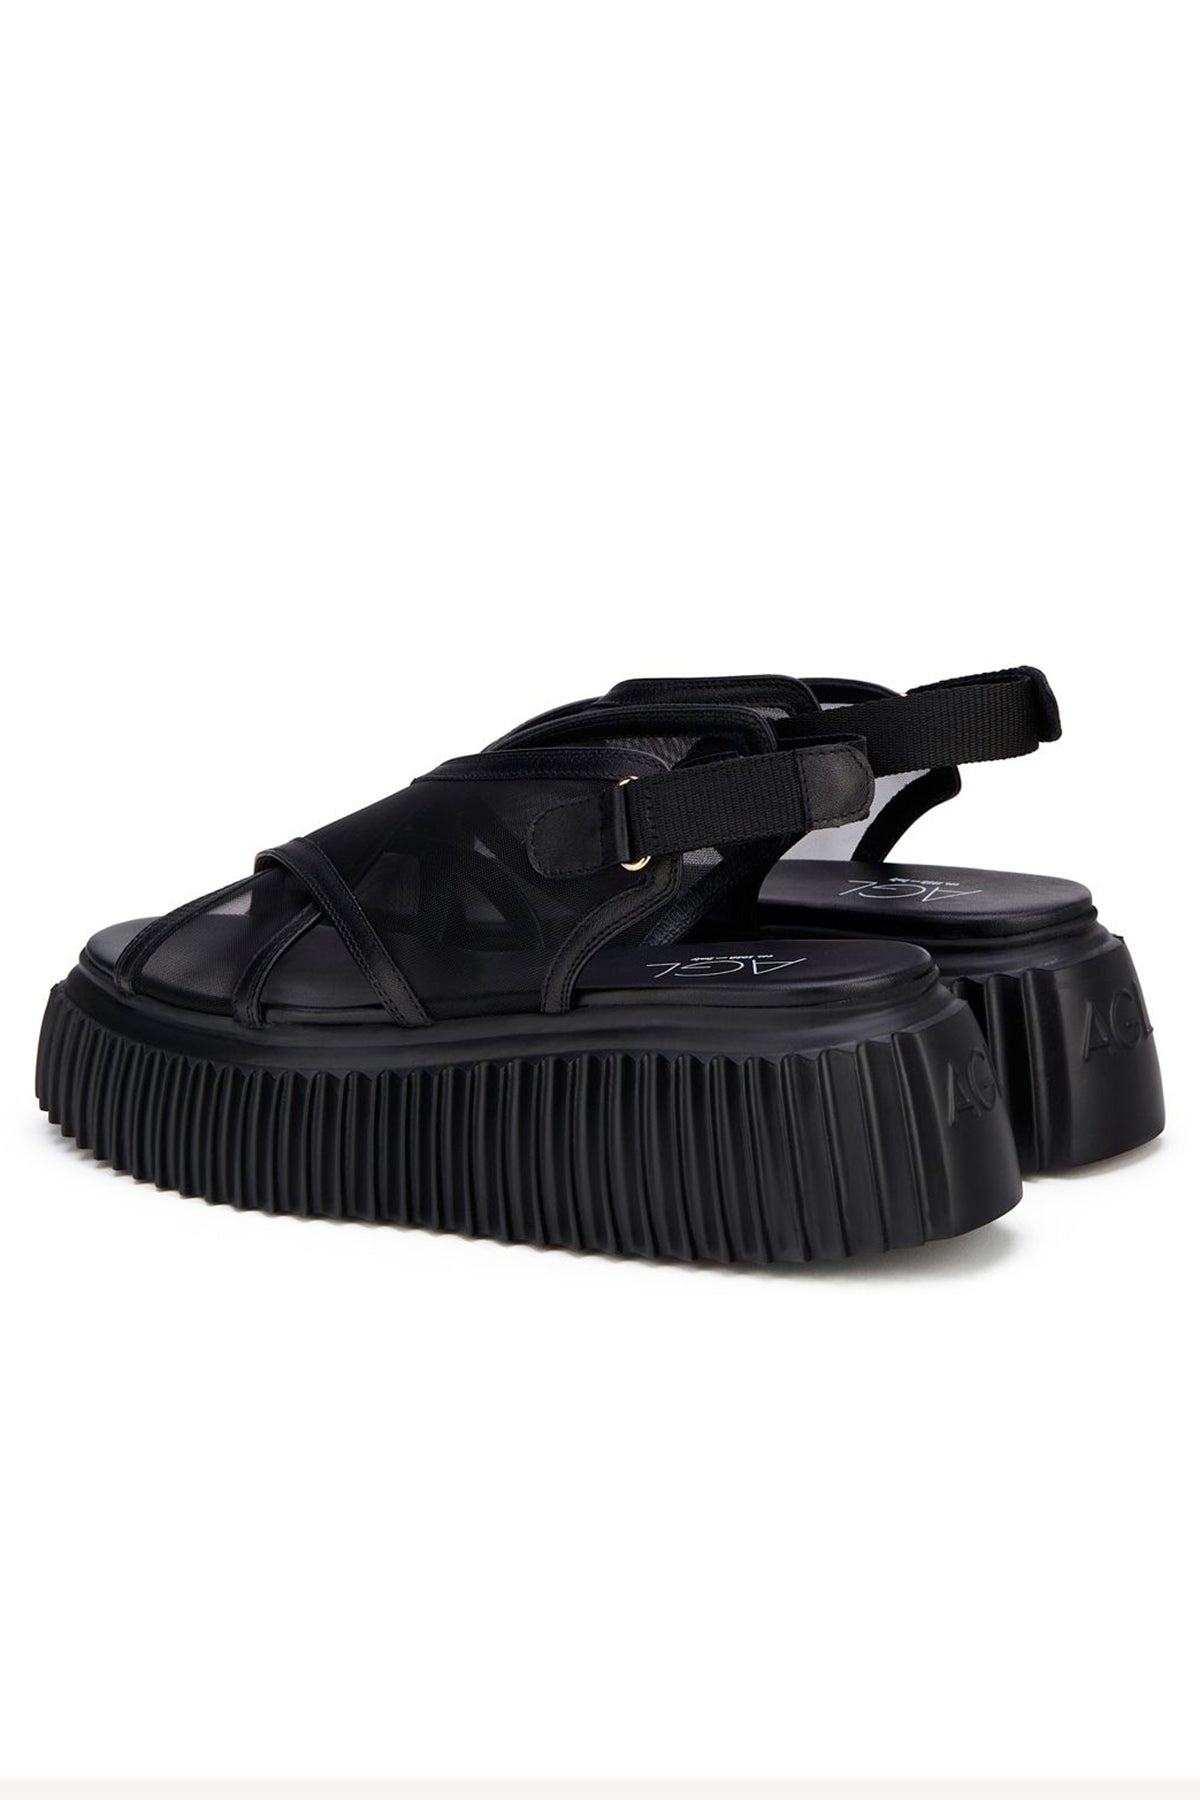 Agl Leyla Tül Detaylı Çapraz Bantlı Deri Sandalet-Libas Trendy Fashion Store